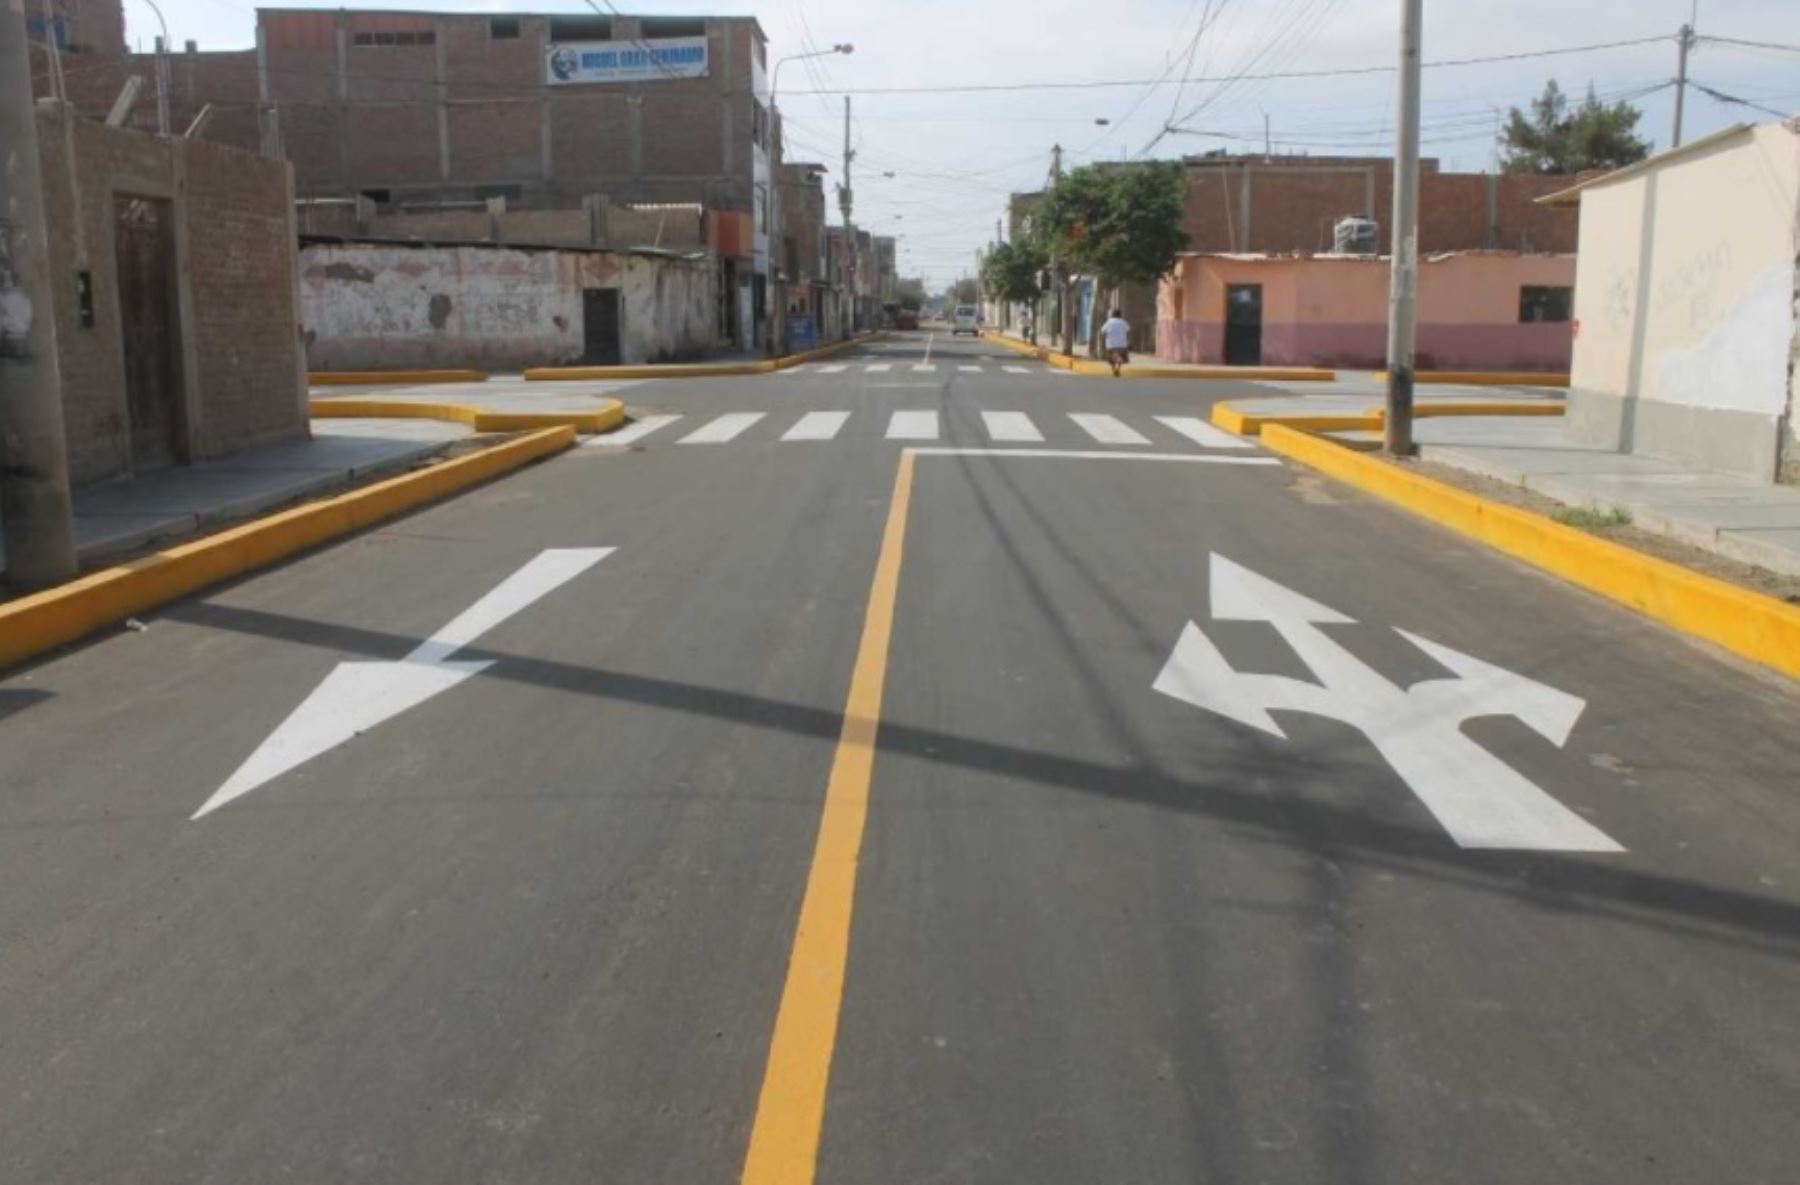 La municipalidad distrital de La Victoria, a través de su Gerencia de Desarrollo Urbano, ejecutará un paquete de obras de pavimentación con una inversión de 3.5 millones soles, con recursos propios, informó el alcalde Anselmo Lozano.